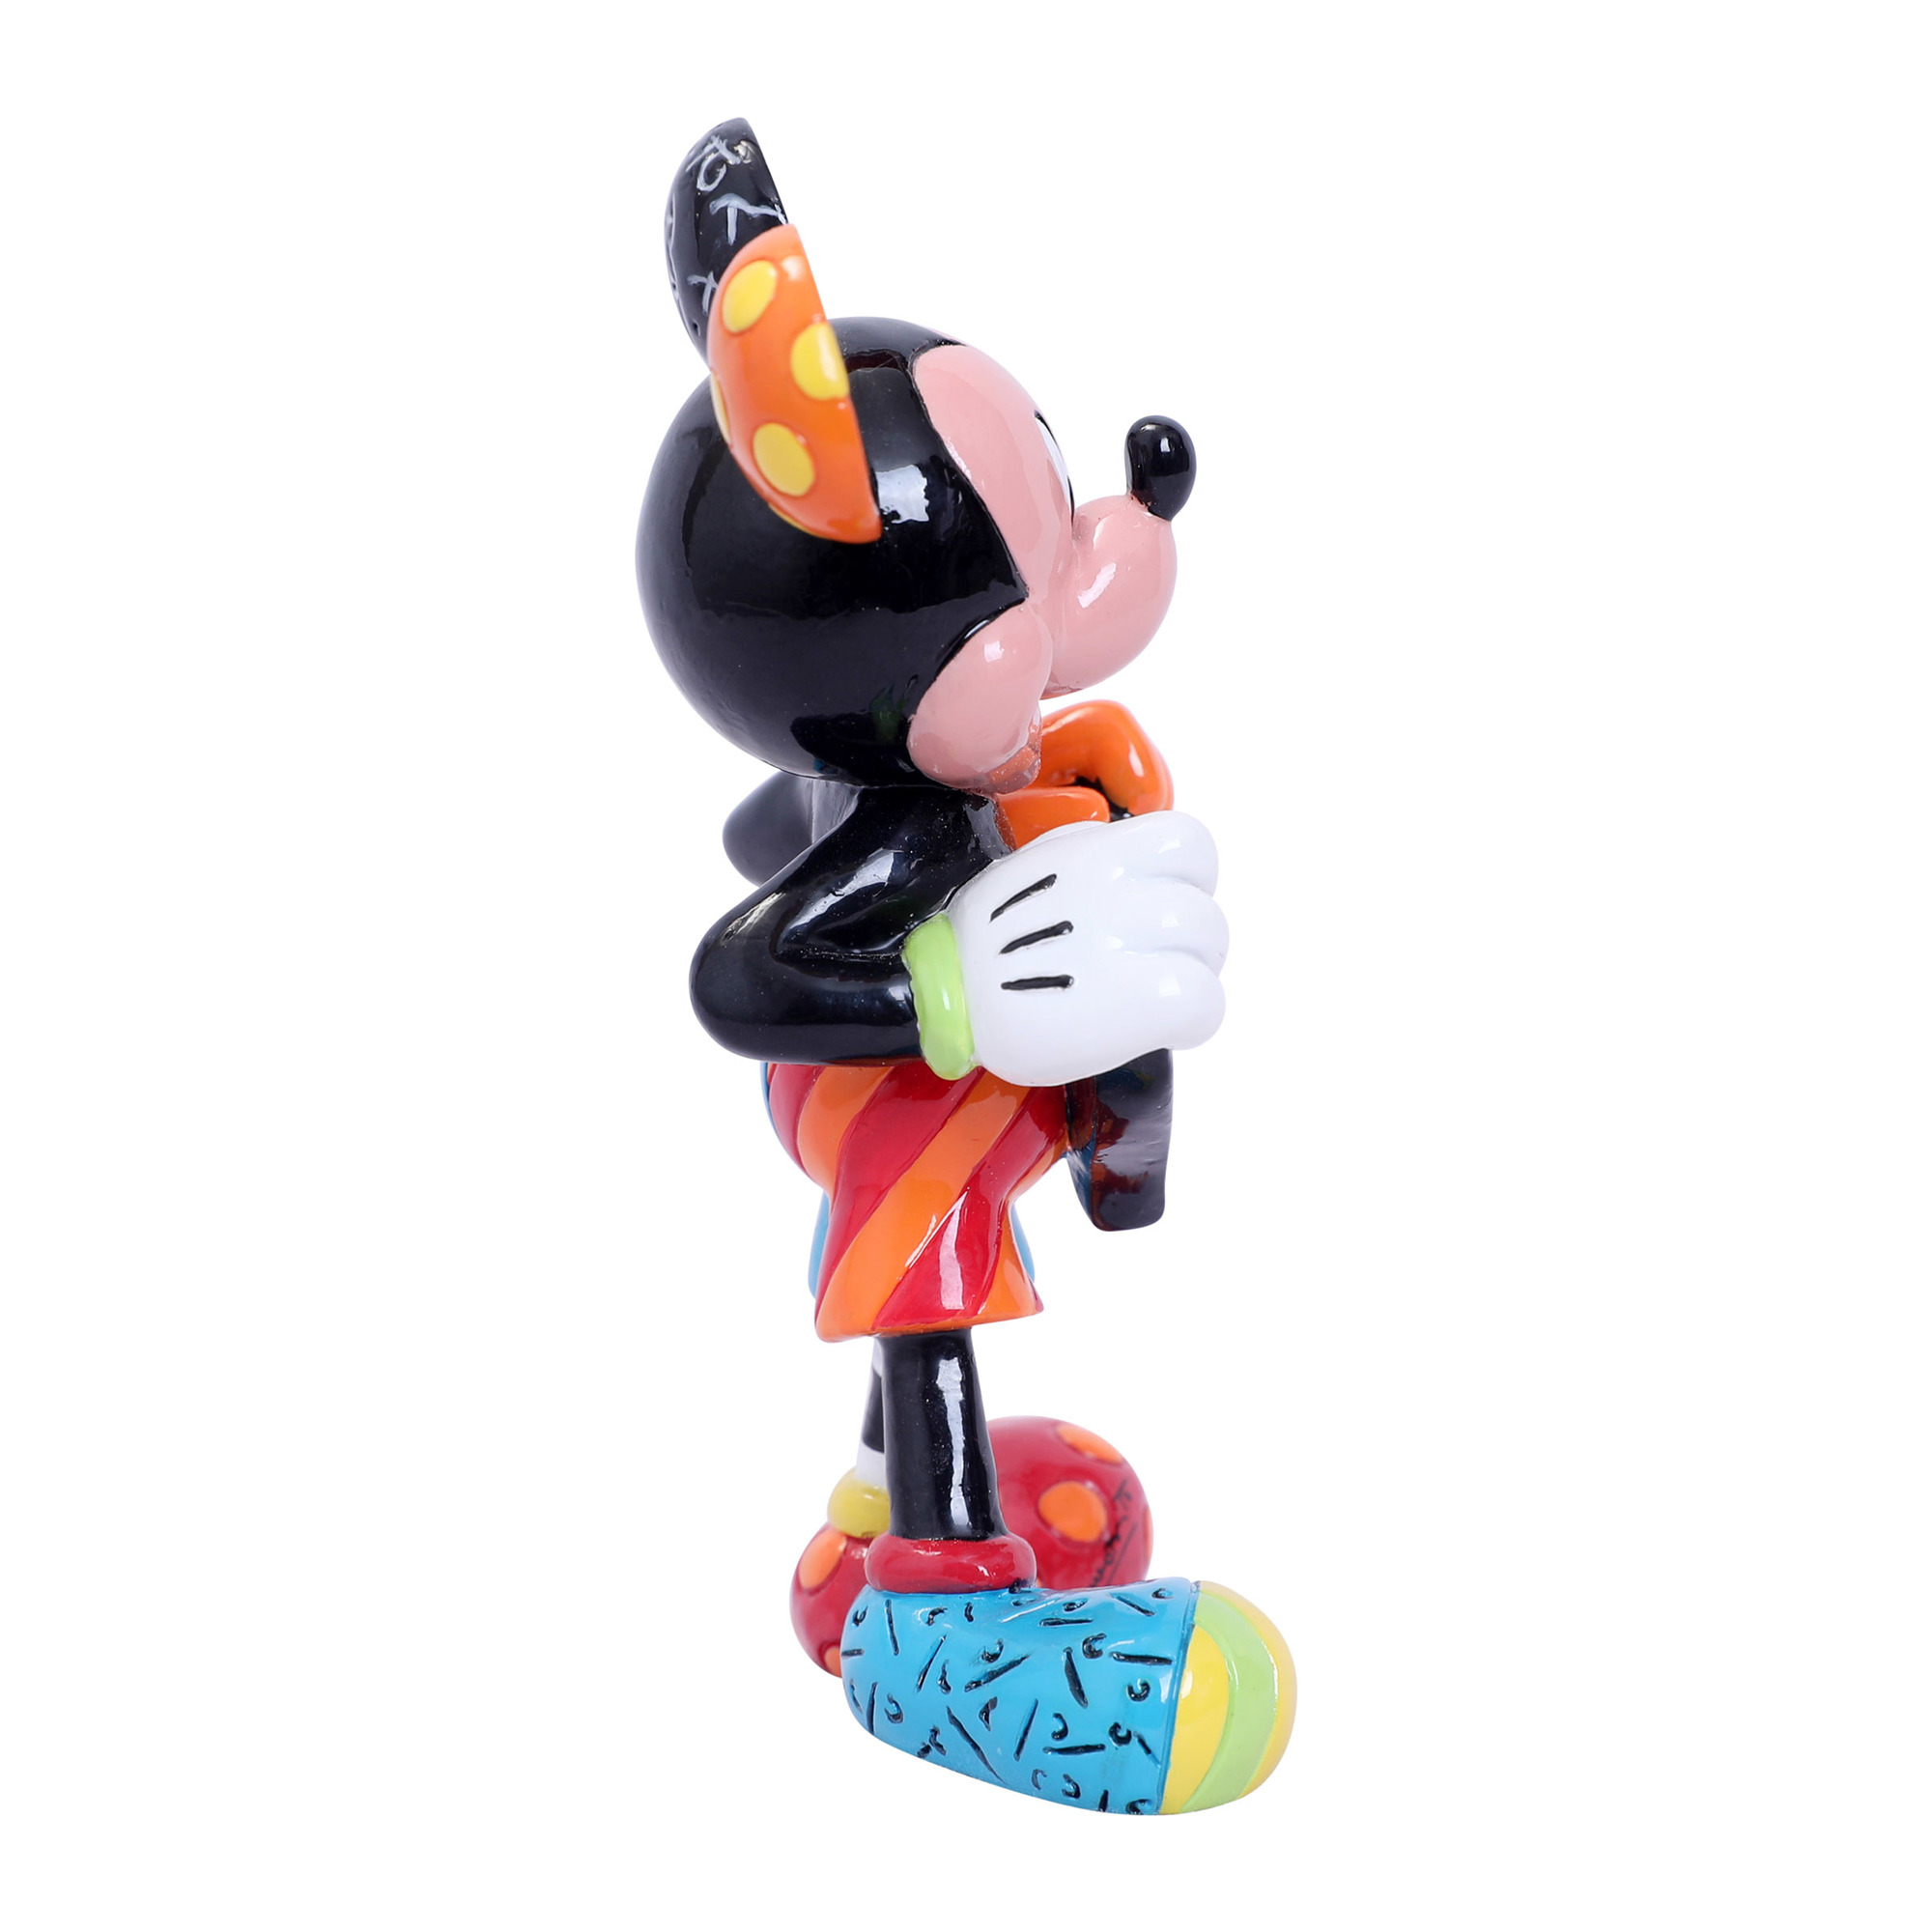 Disney Britto Mickey and Minnie Mouse Heart Icon Figurine 6001005 NEW IN BOX